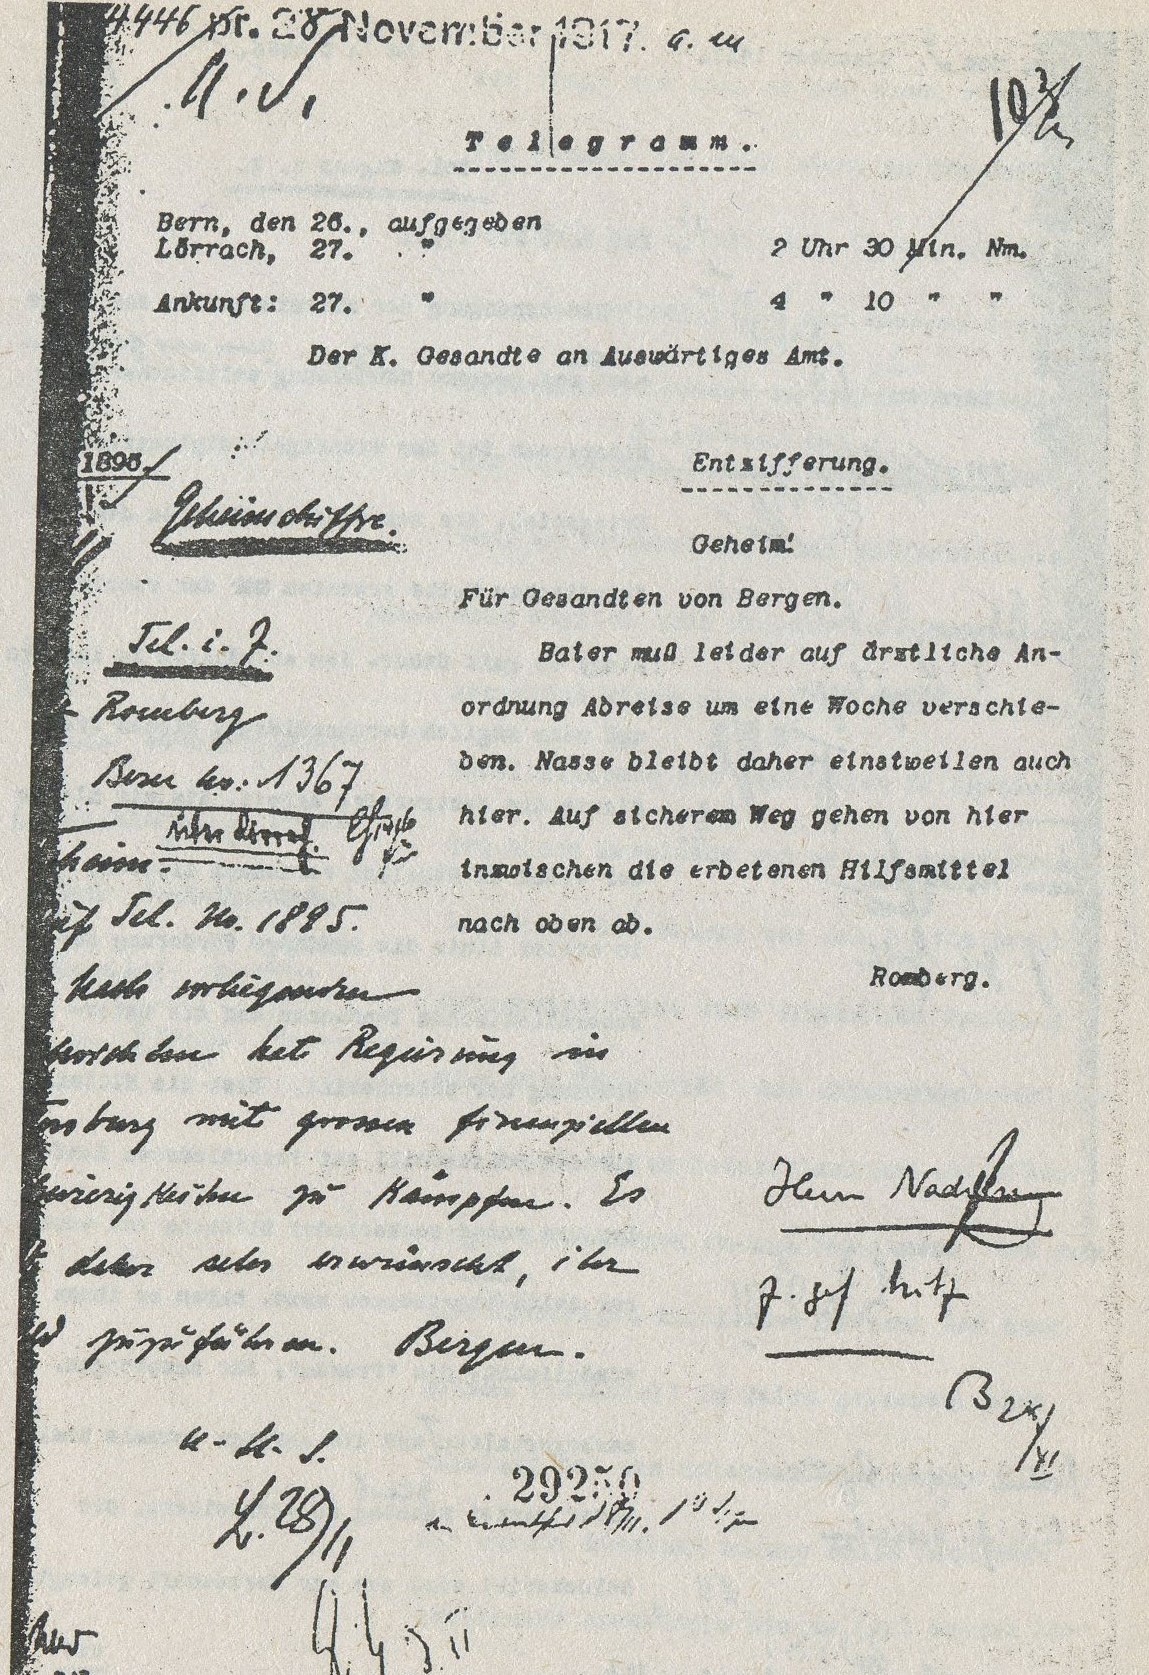 A.S. 4446. Телеграмма, 26 ноября 1917 г. ф. Ромберг, императорская миссия в Берне, Министерству иностранных дел. 